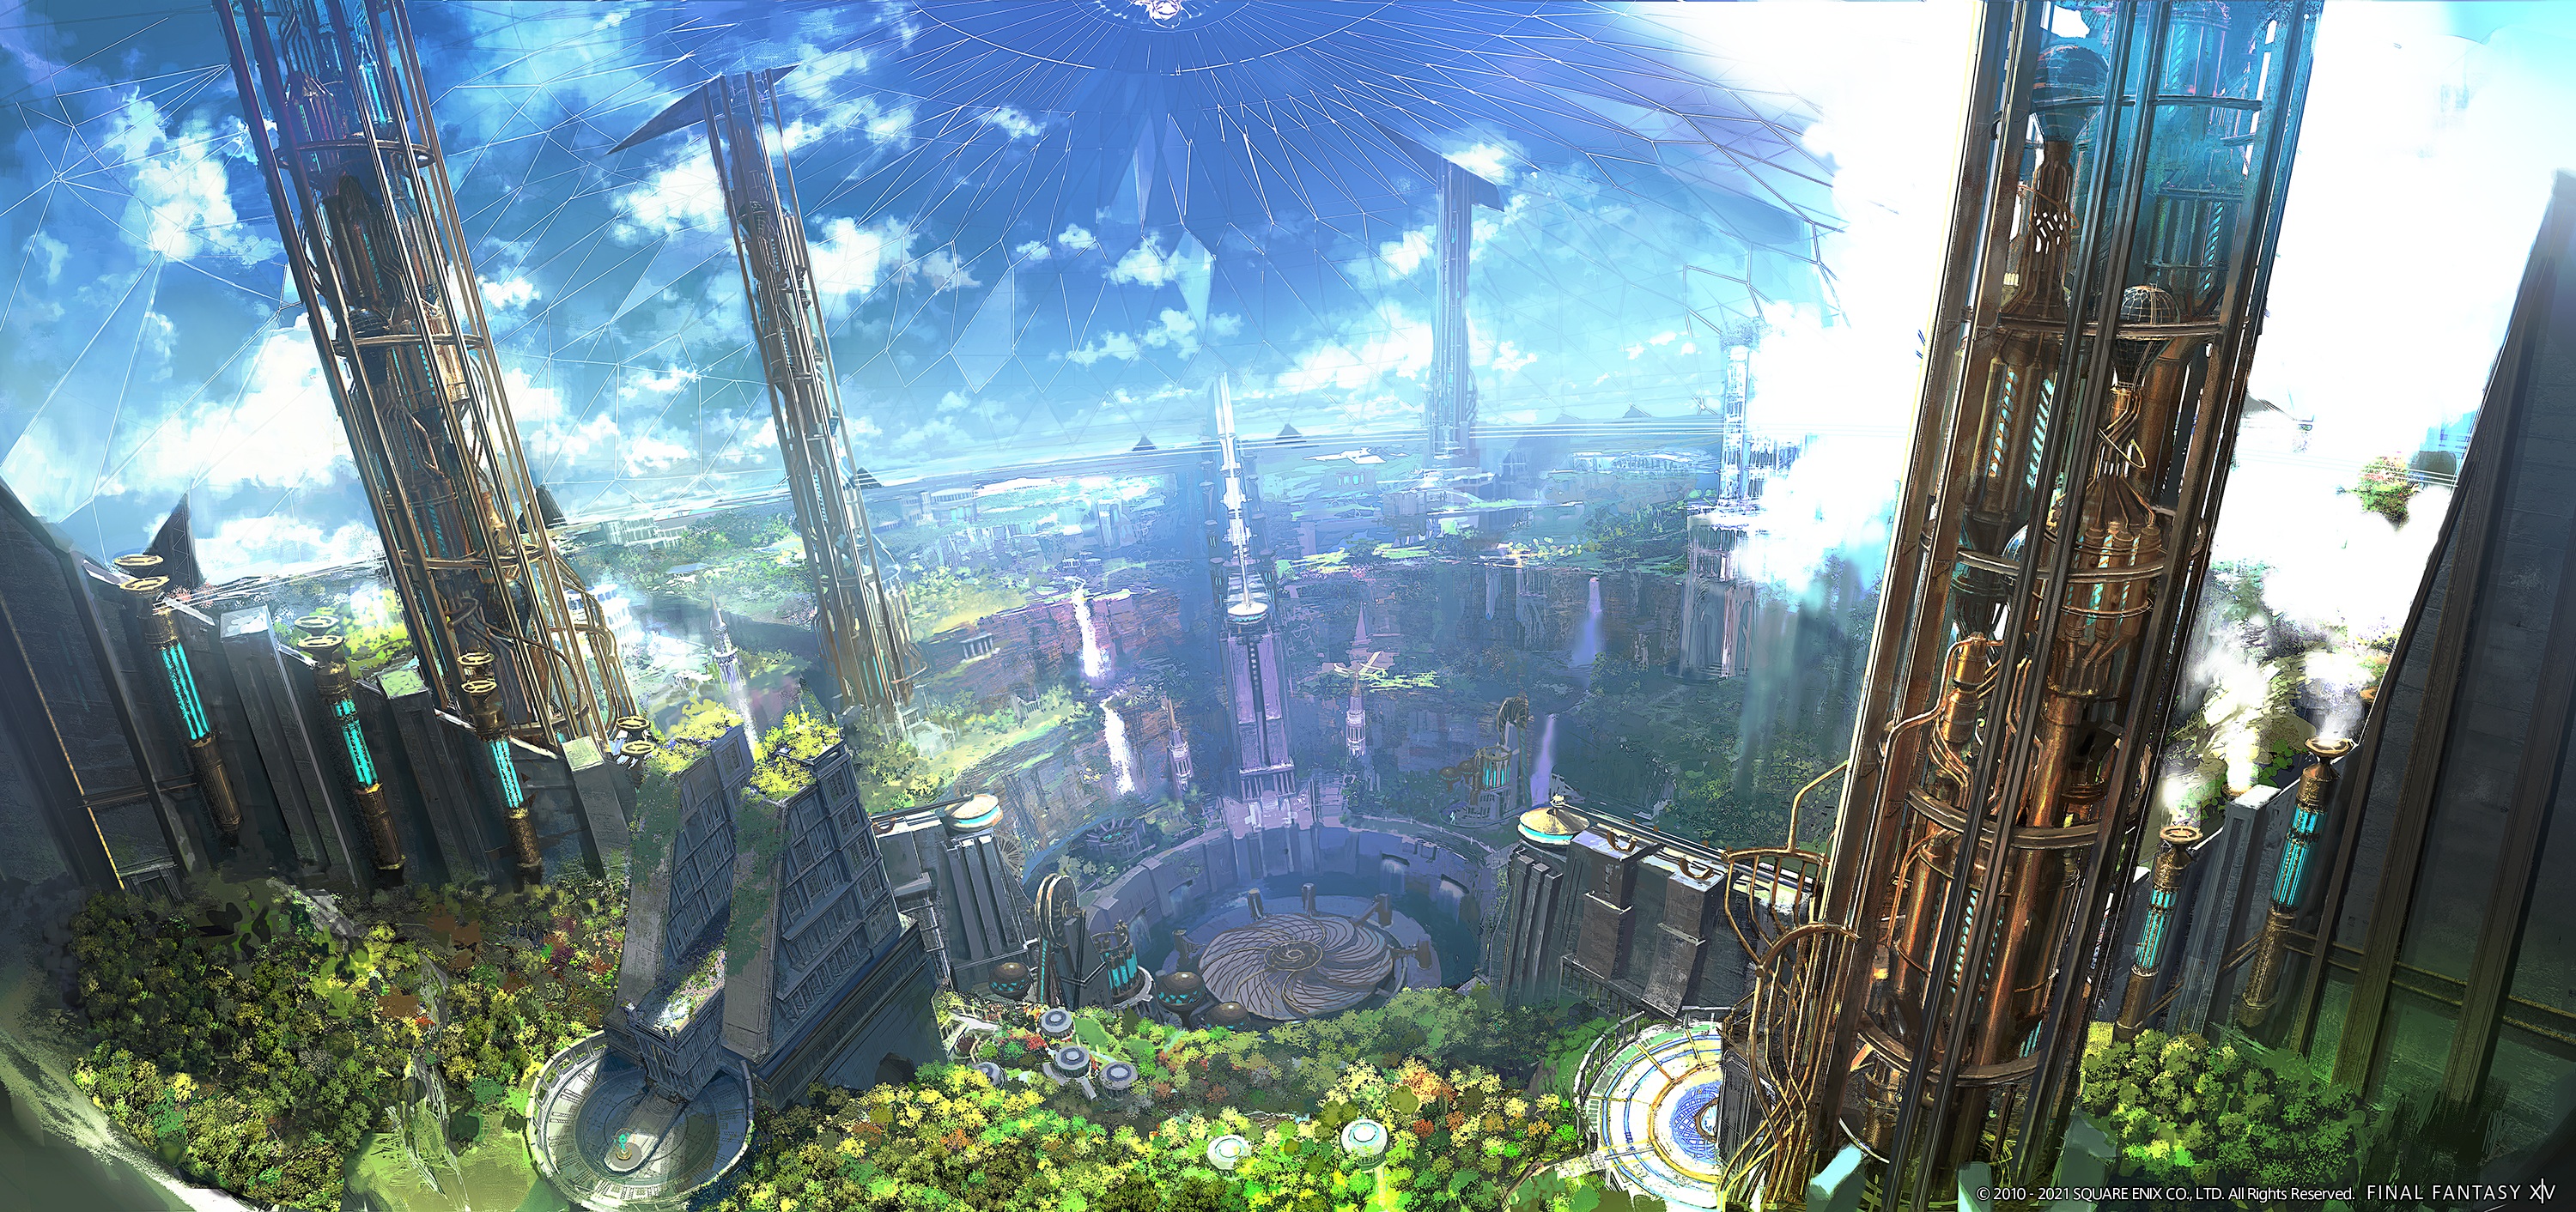 General 3000x1412 moescape fantasy city fantasy architecture video games video game art Square Enix Final Fantasy XIV: A Realm Reborn